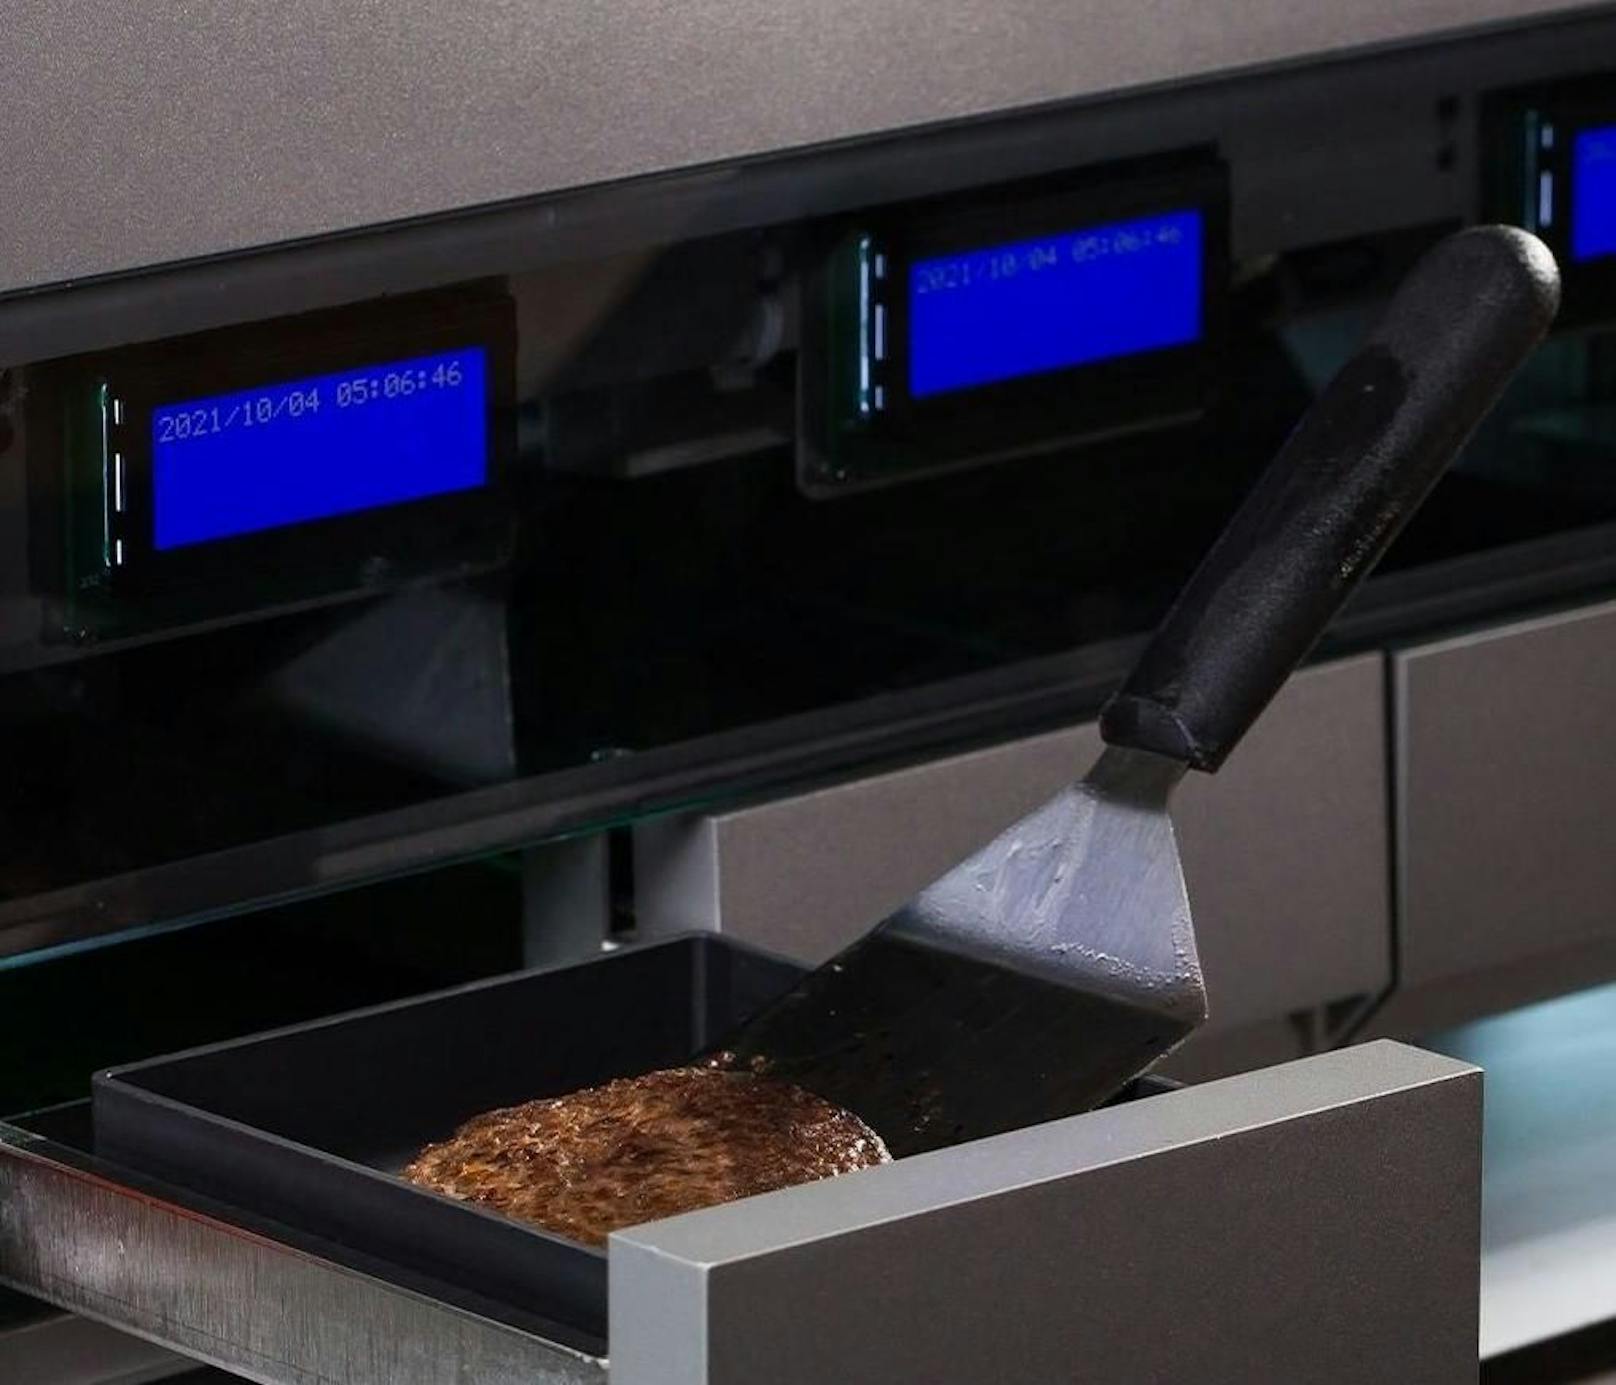 Dieser Roboter kann personalisierte Burger braten